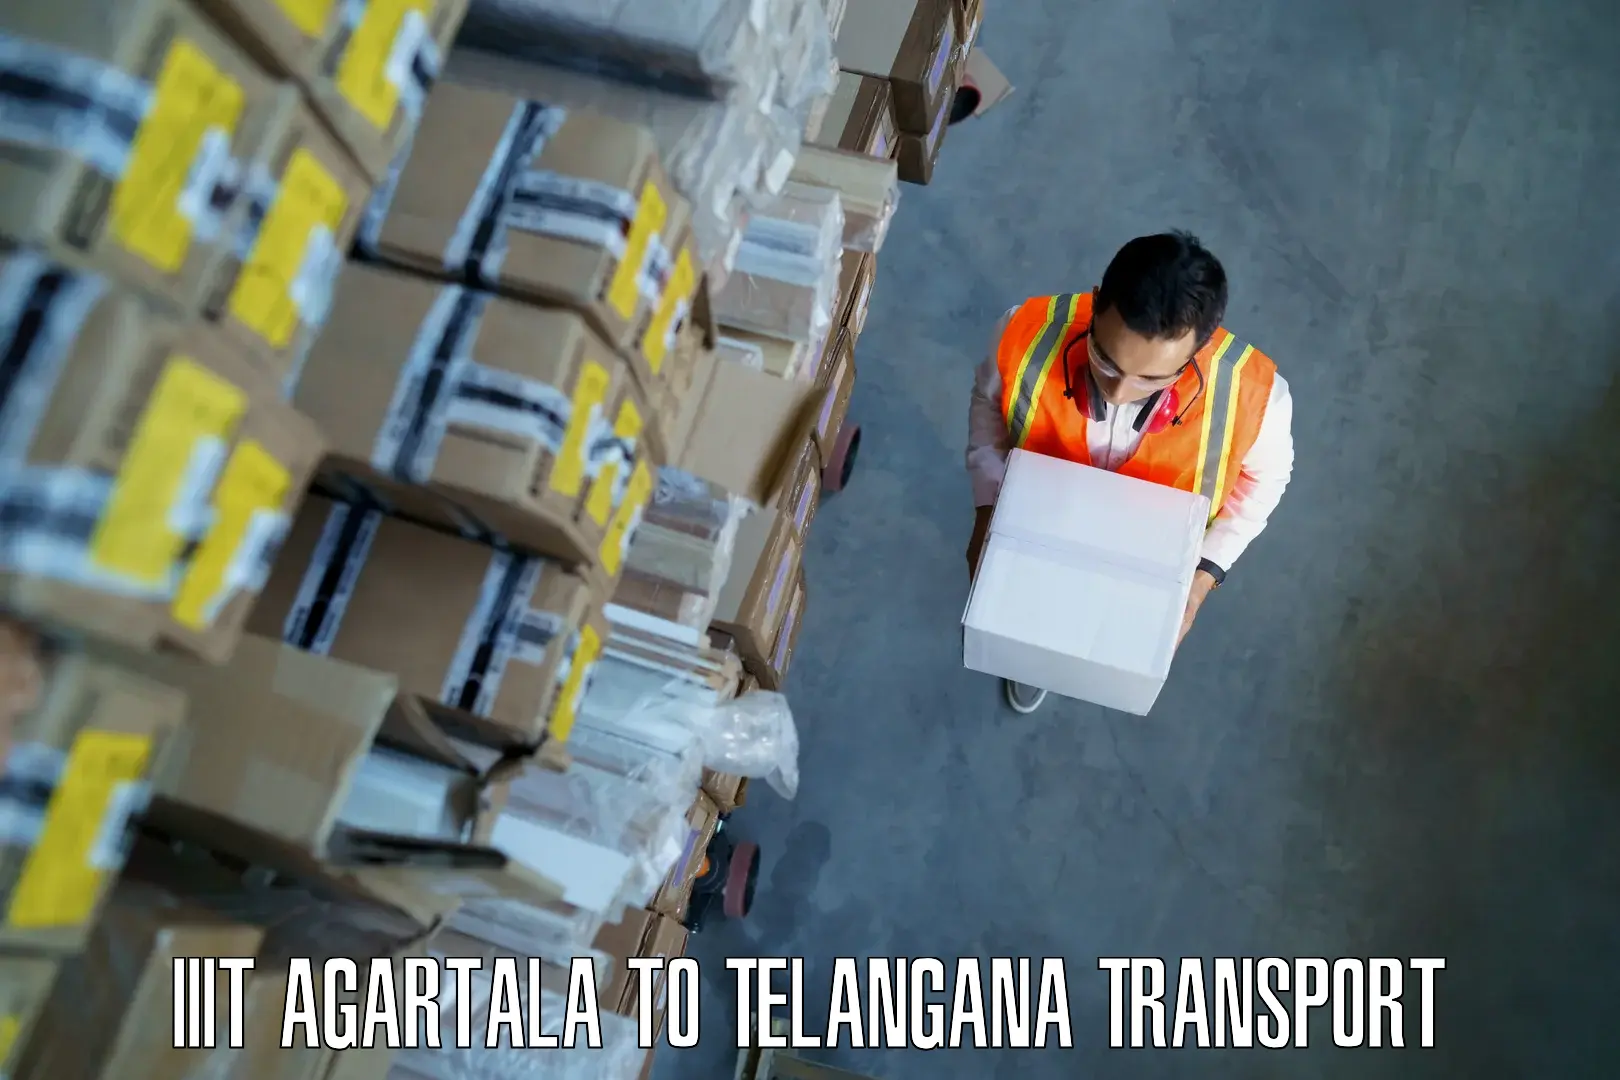 Vehicle transport services IIIT Agartala to Nereducharla